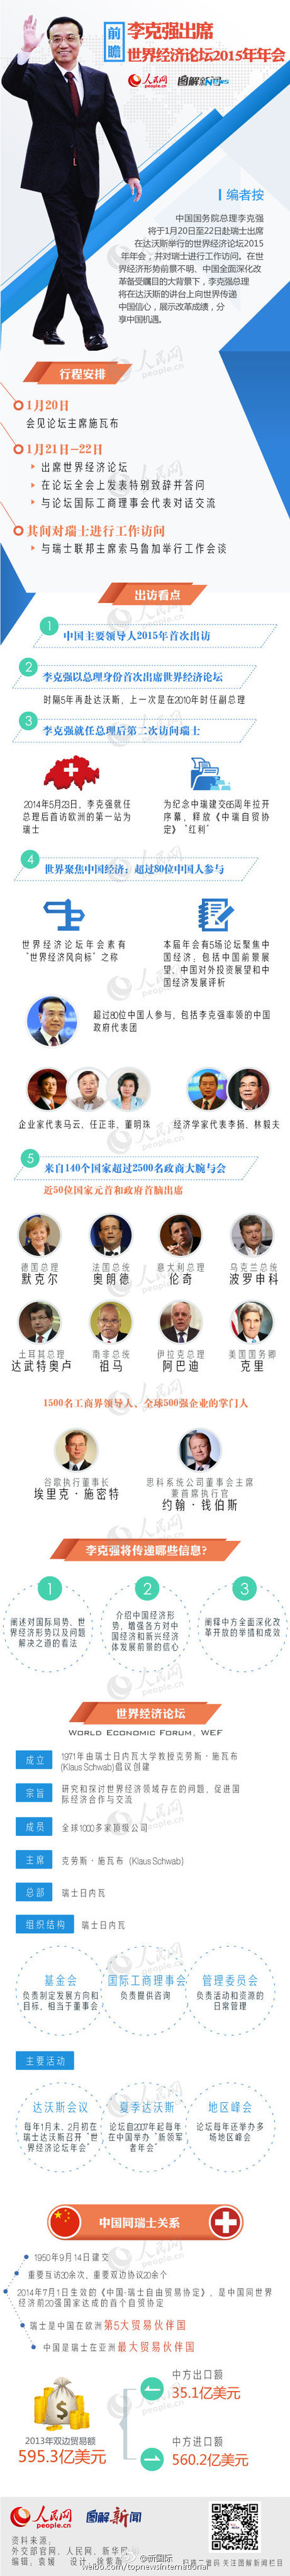 李克強離京出席世界經濟論壇2015年年會